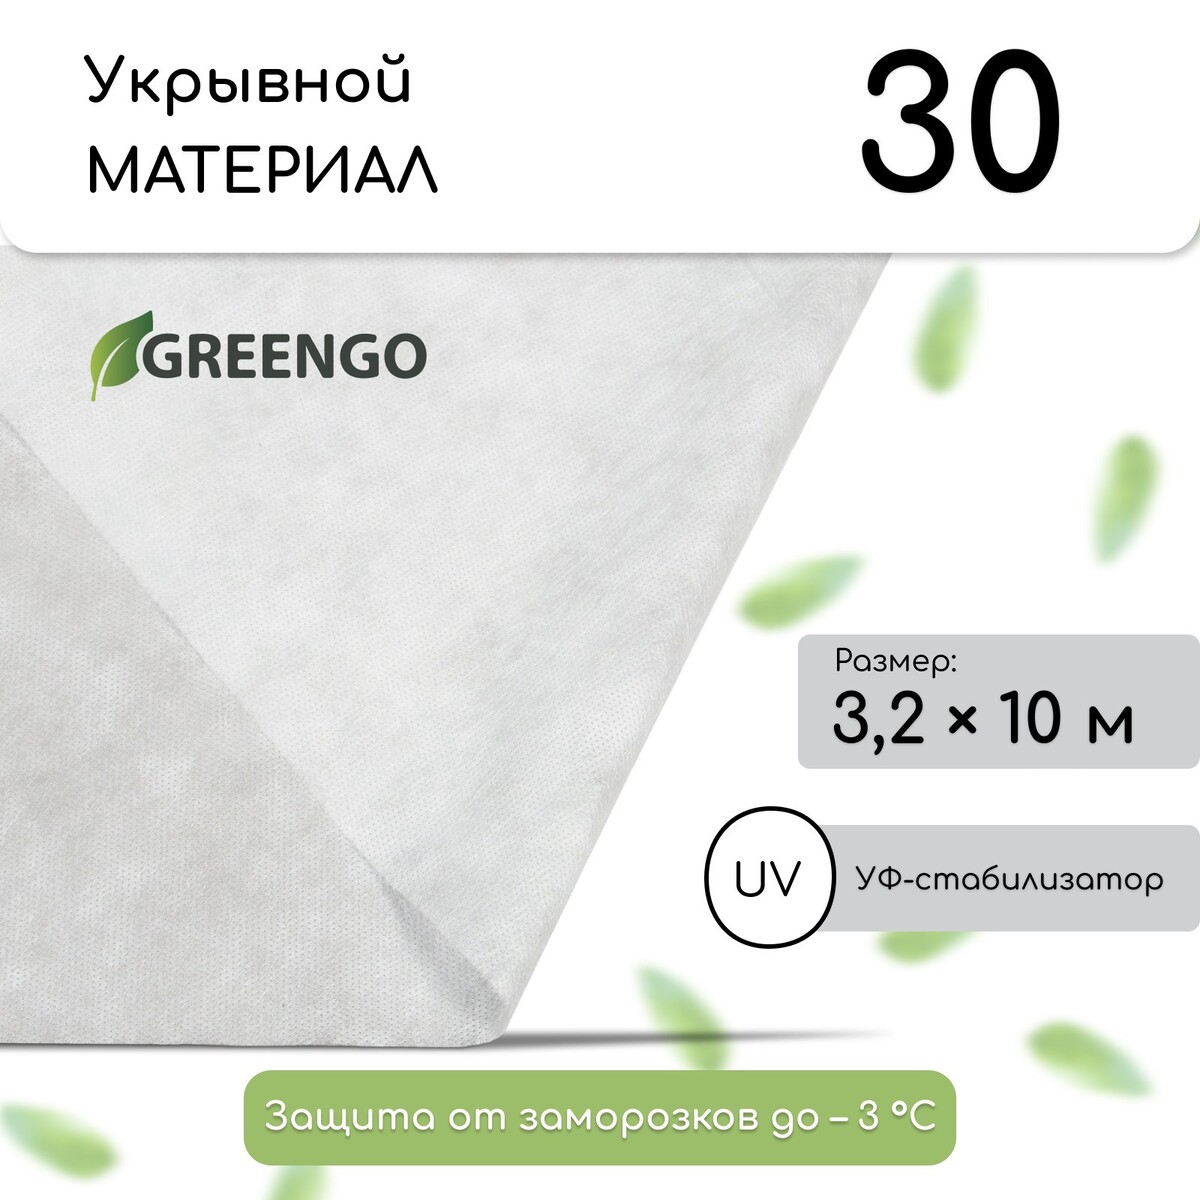 Материал укрывной, 10 × 3,2 м, плотность 30 г/м², спанбонд с уф-стабилизатором, белый, greengo, эконом 20%